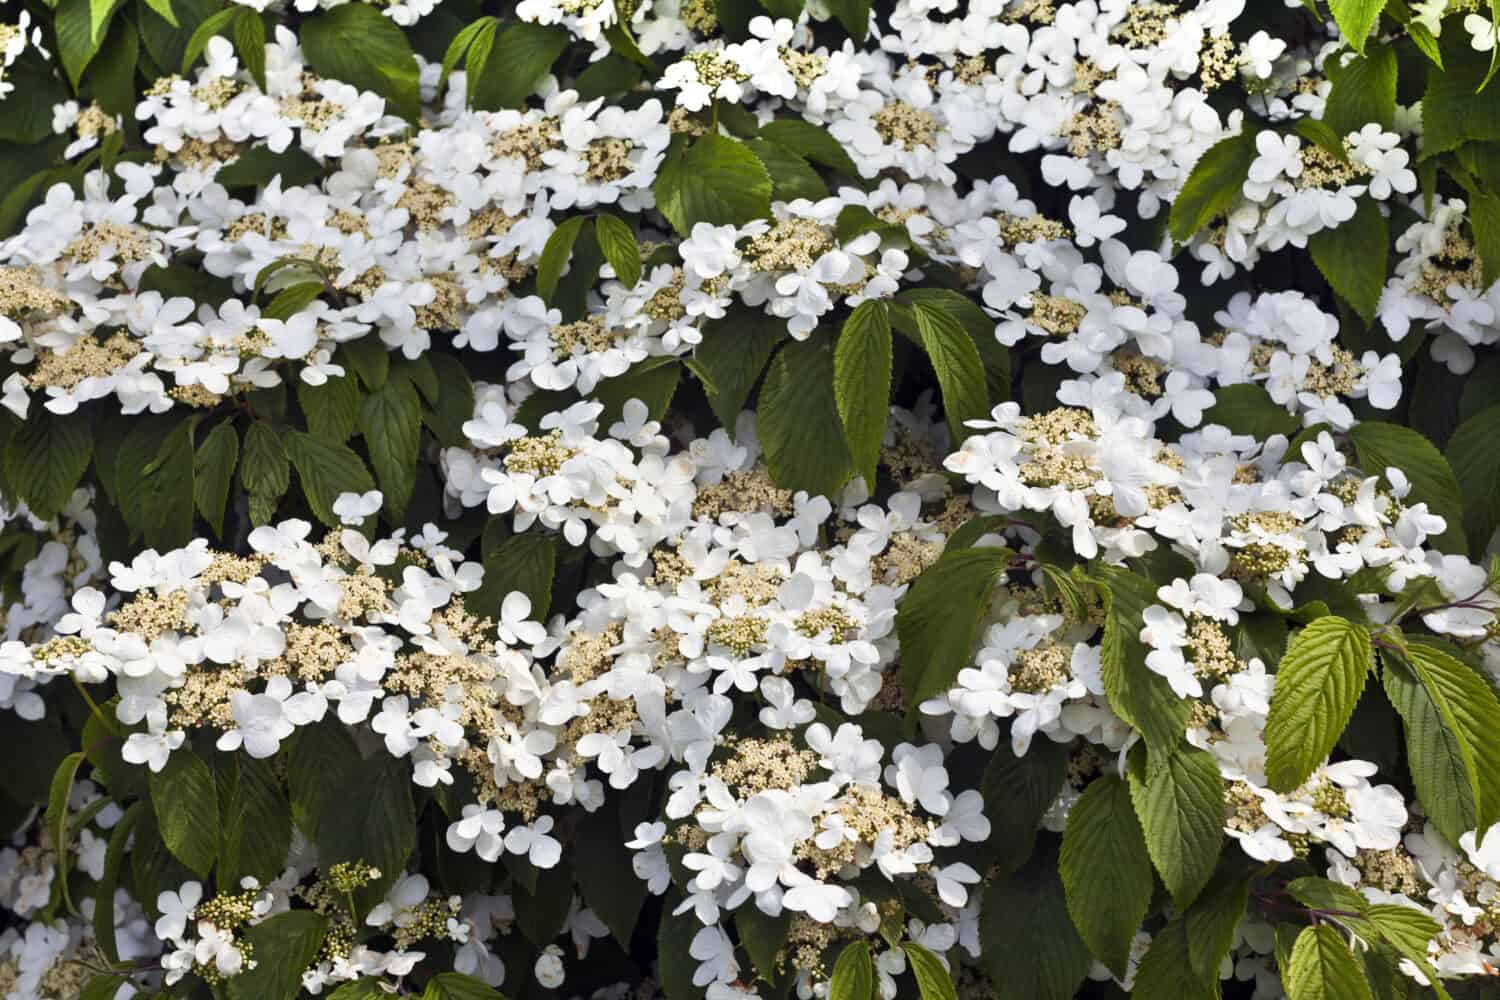 Hobblebush flowering shrub in a spring garden